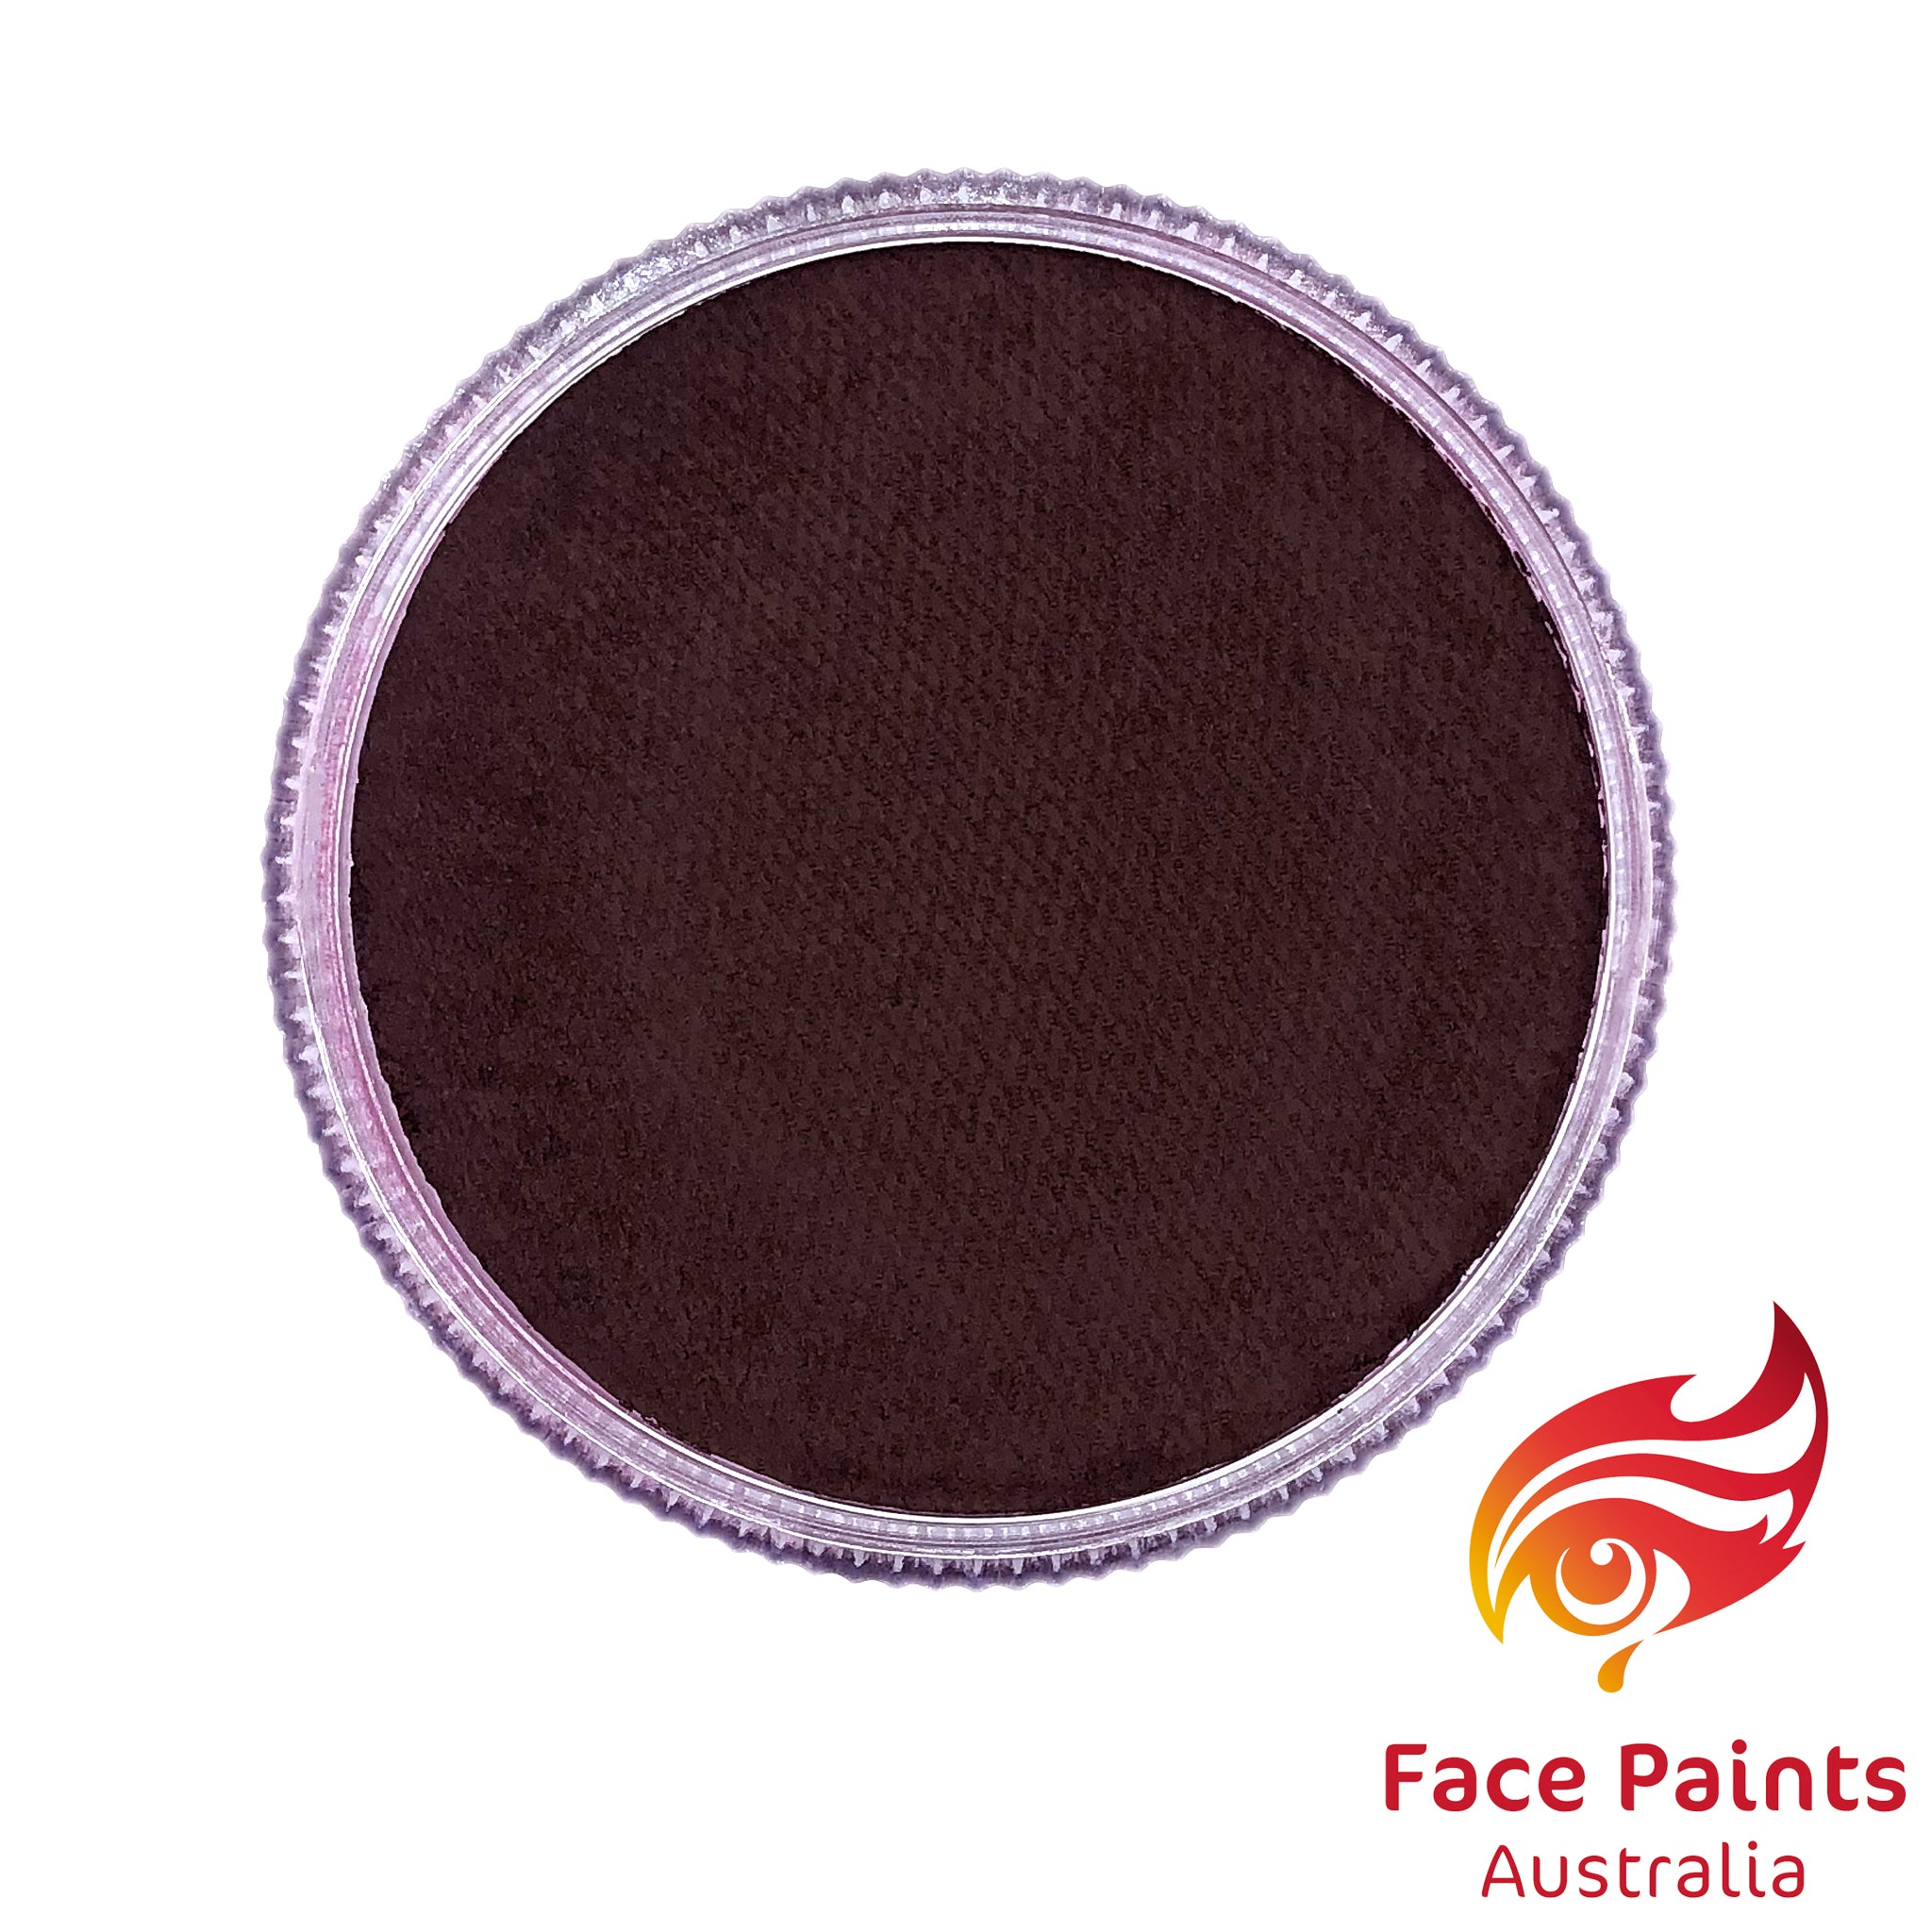 Face paints Australia Essential 30g Red Velvet